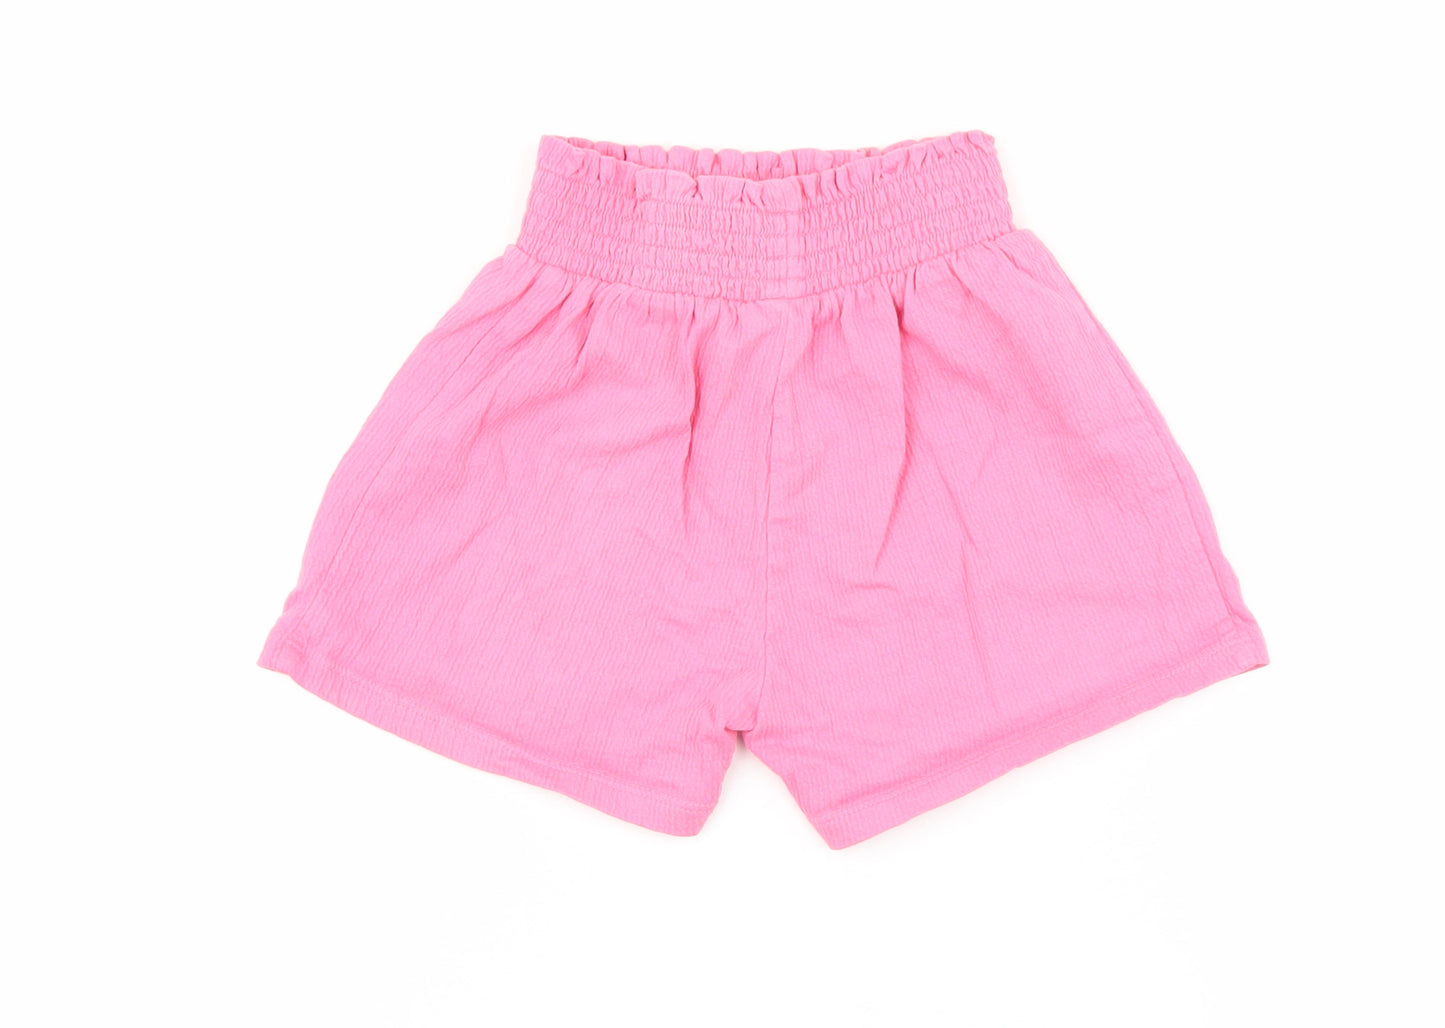 George Girls Pink Cotton Bermuda Shorts Size 4-5 Years Regular